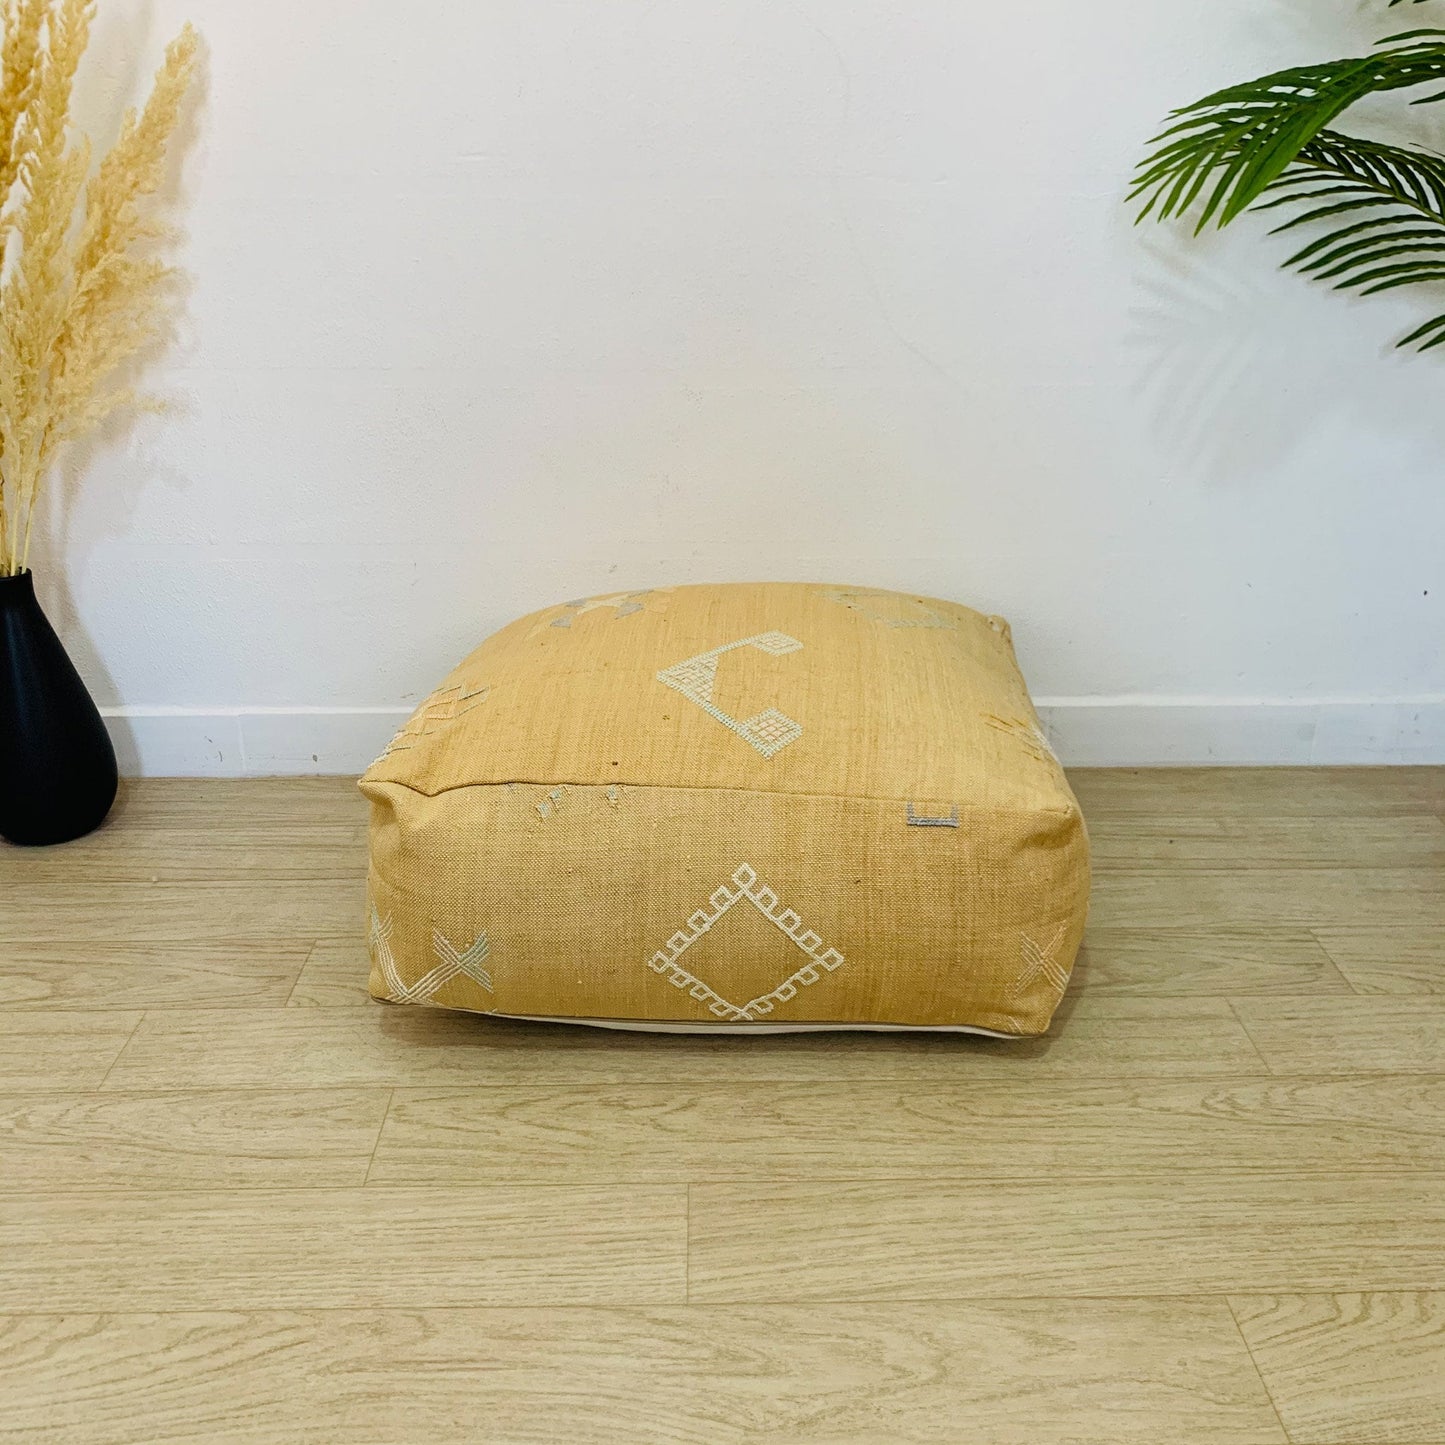 Moroccan Beige Cactus Floor Cushion 24"x24"x8"in